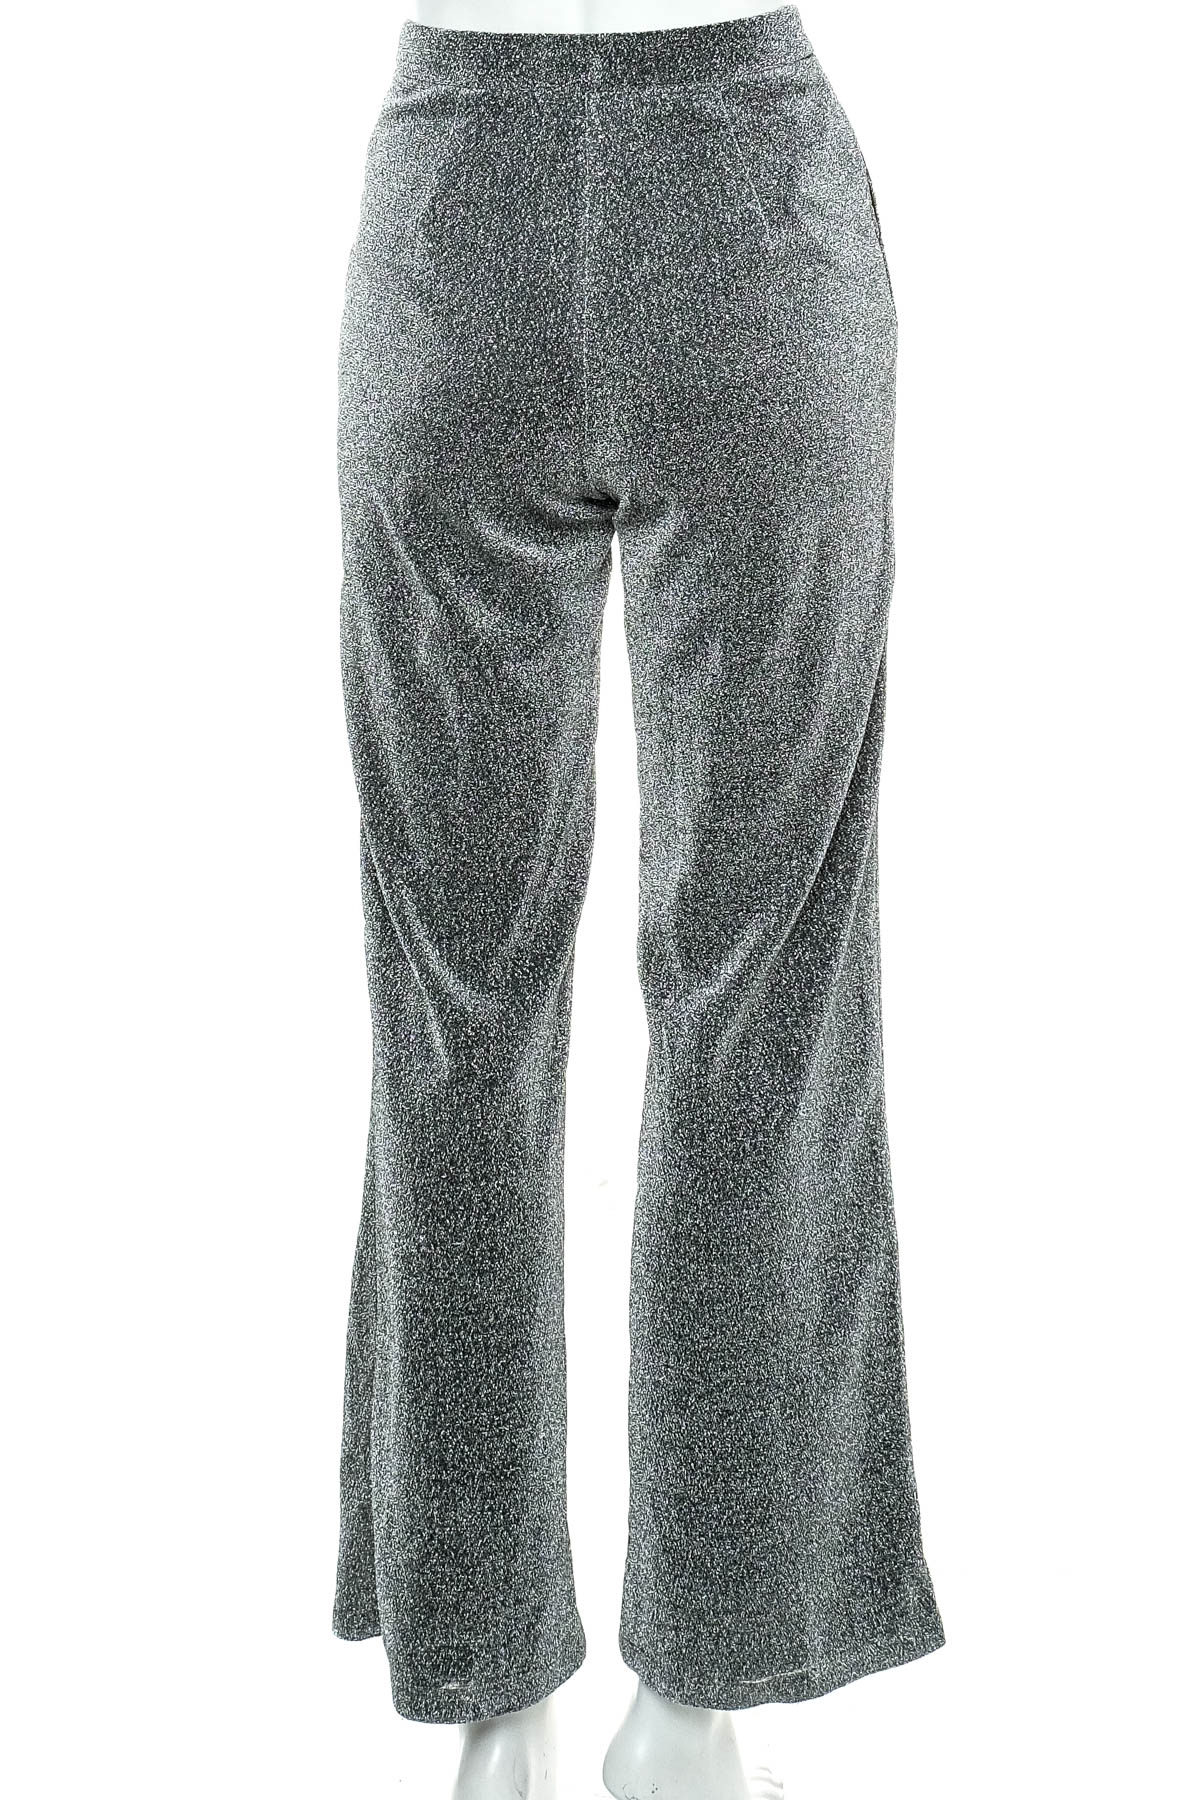 Pantaloni de damă - LINN AHLBORG x NA-KD - 1